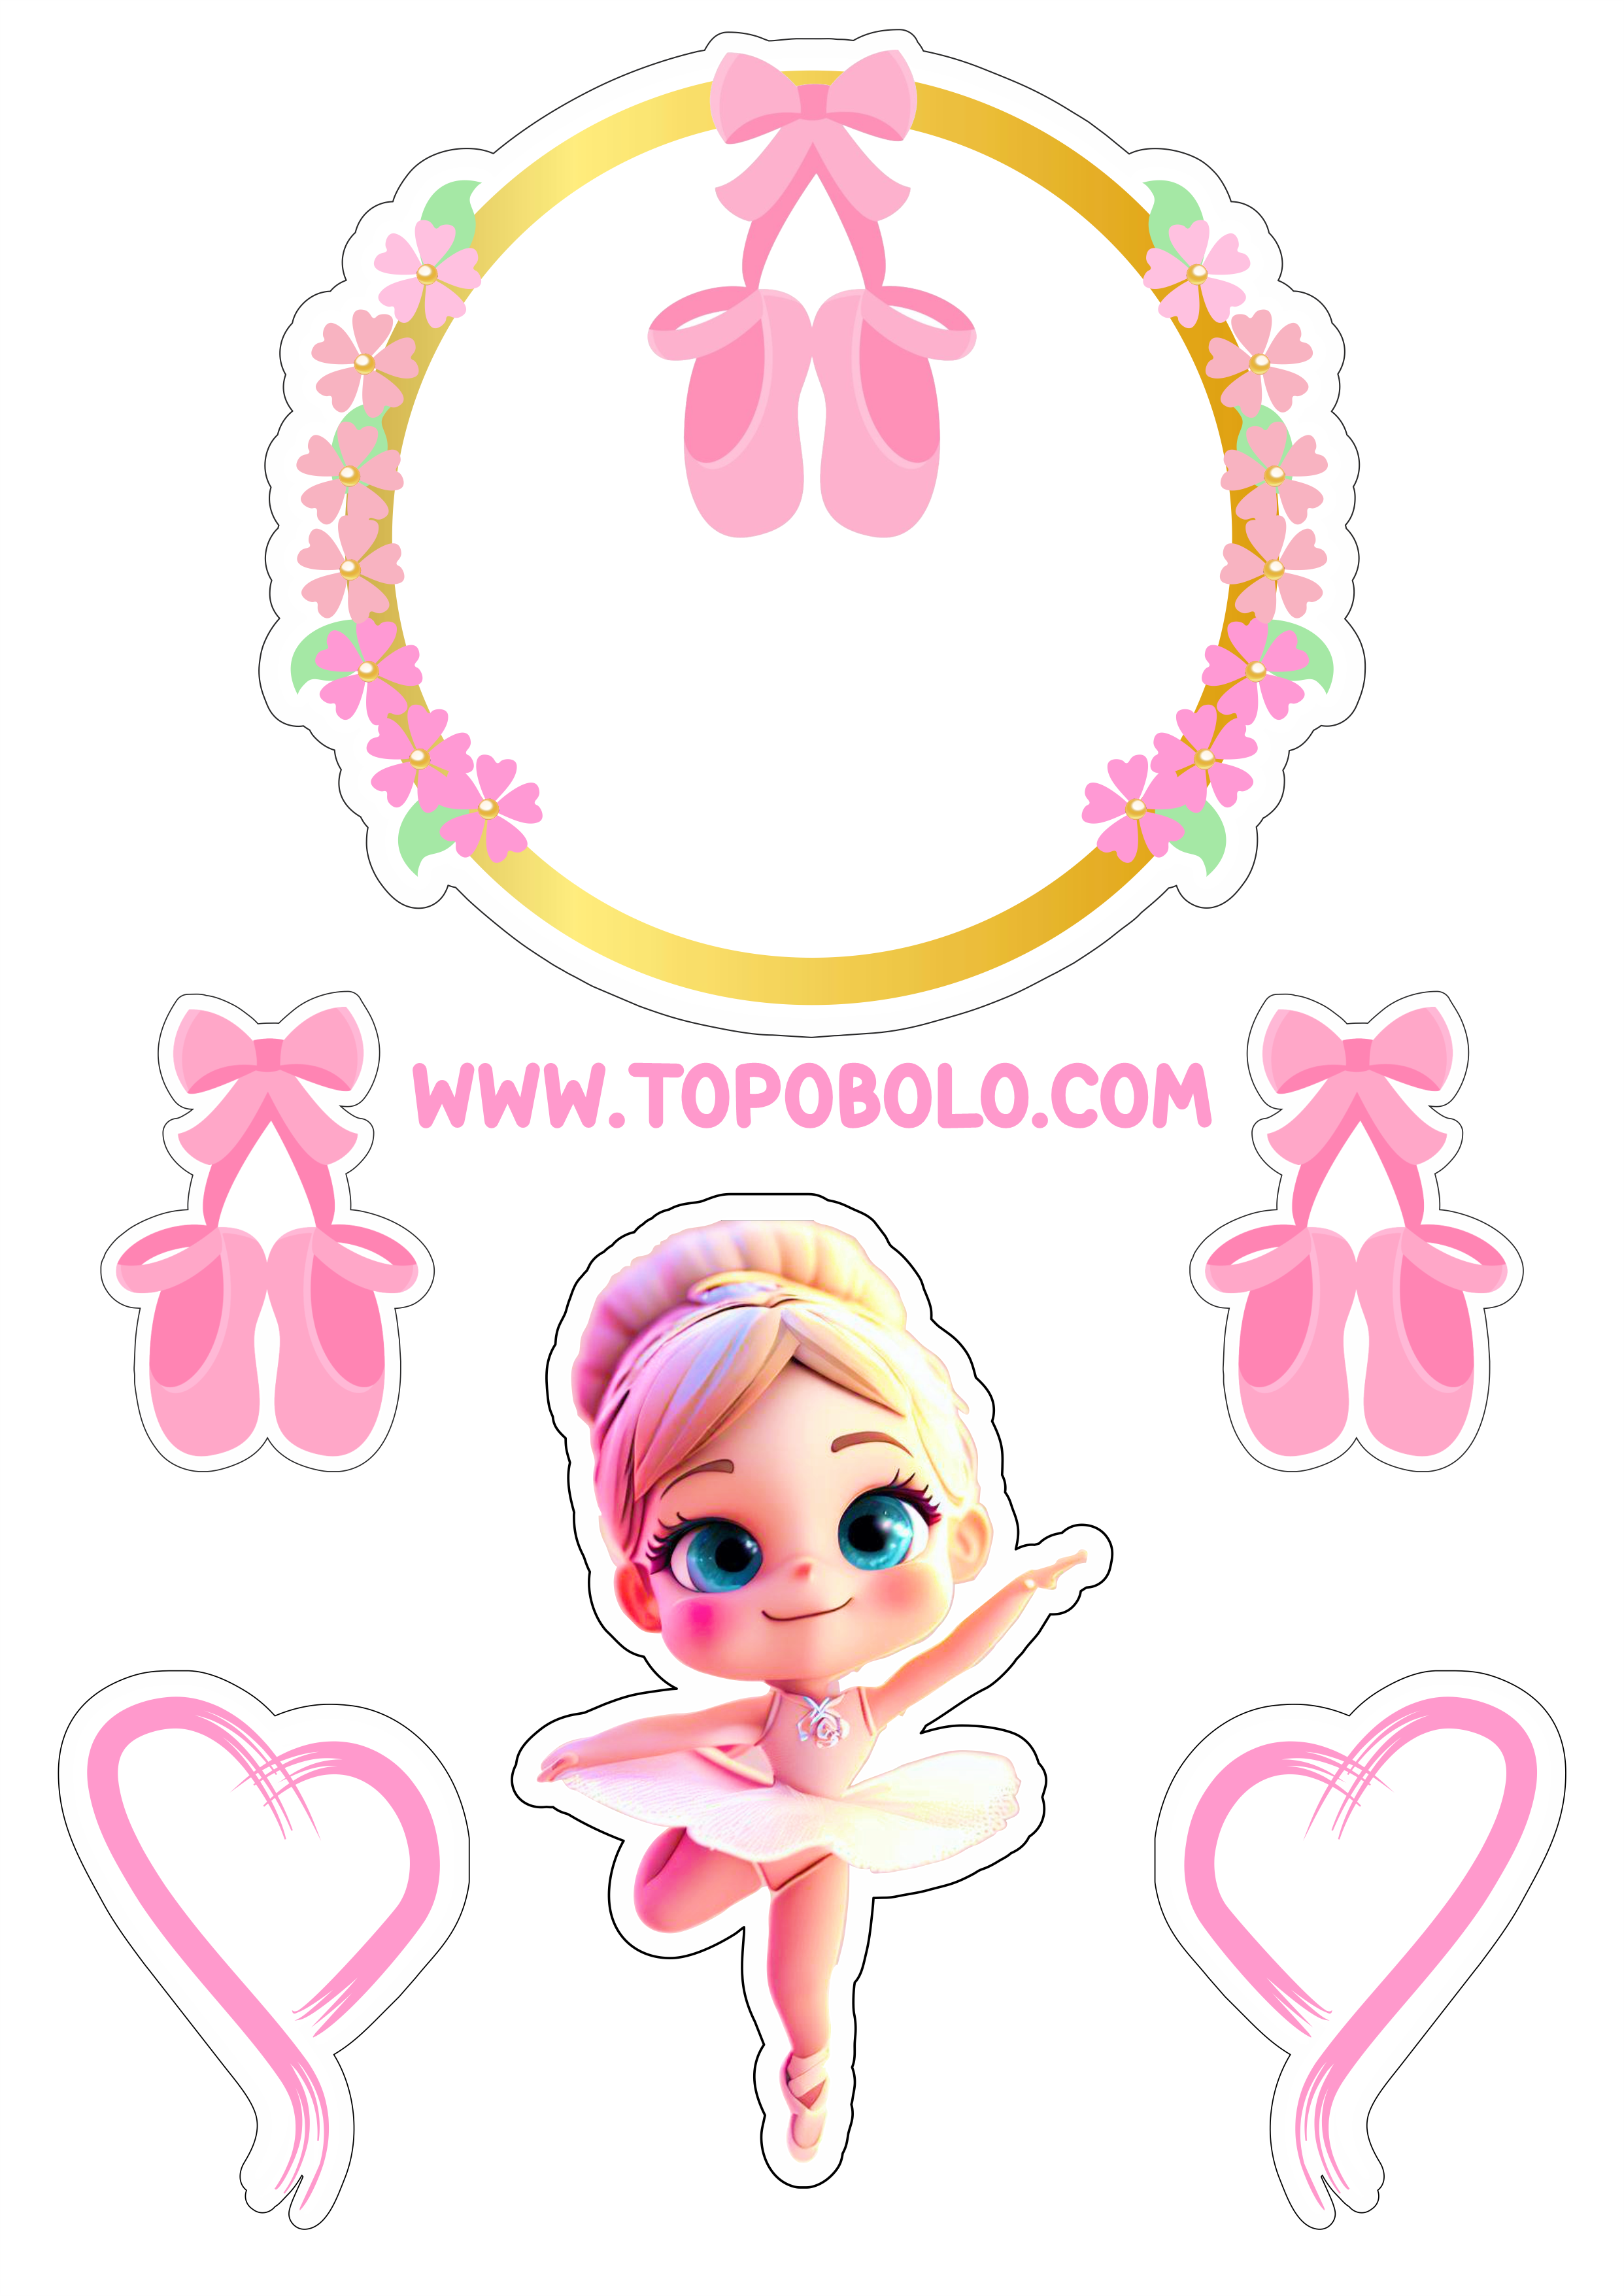 Bailarina topo de bolo aniversário menina decoração rosa com corações boneca fofinha png